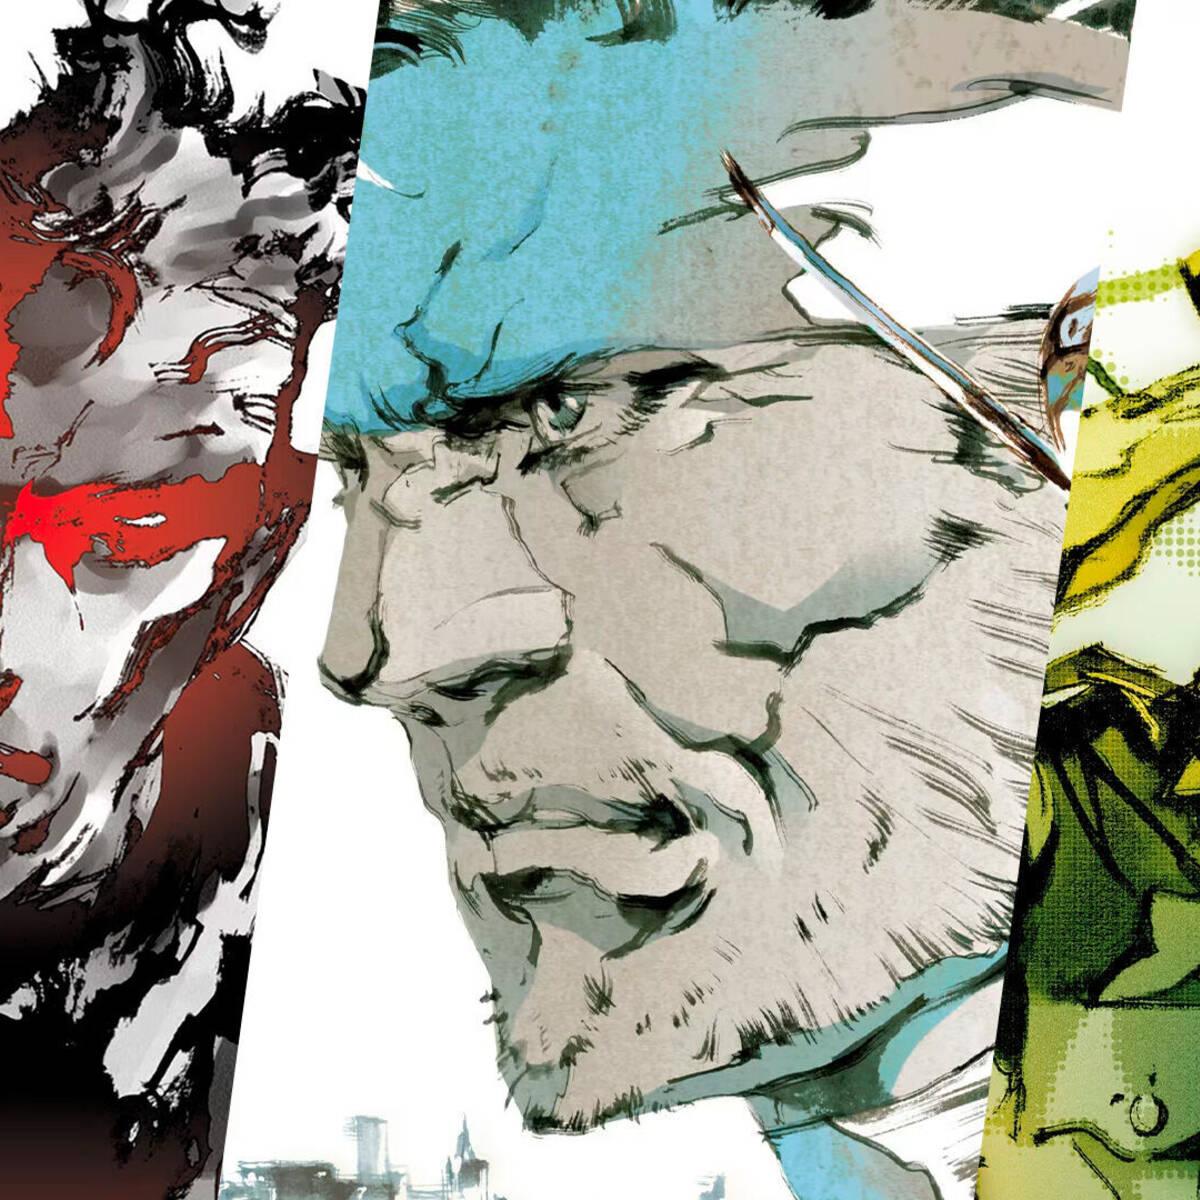 Todos los juegos de Metal Gear y cuáles son los mejores - Saga completa